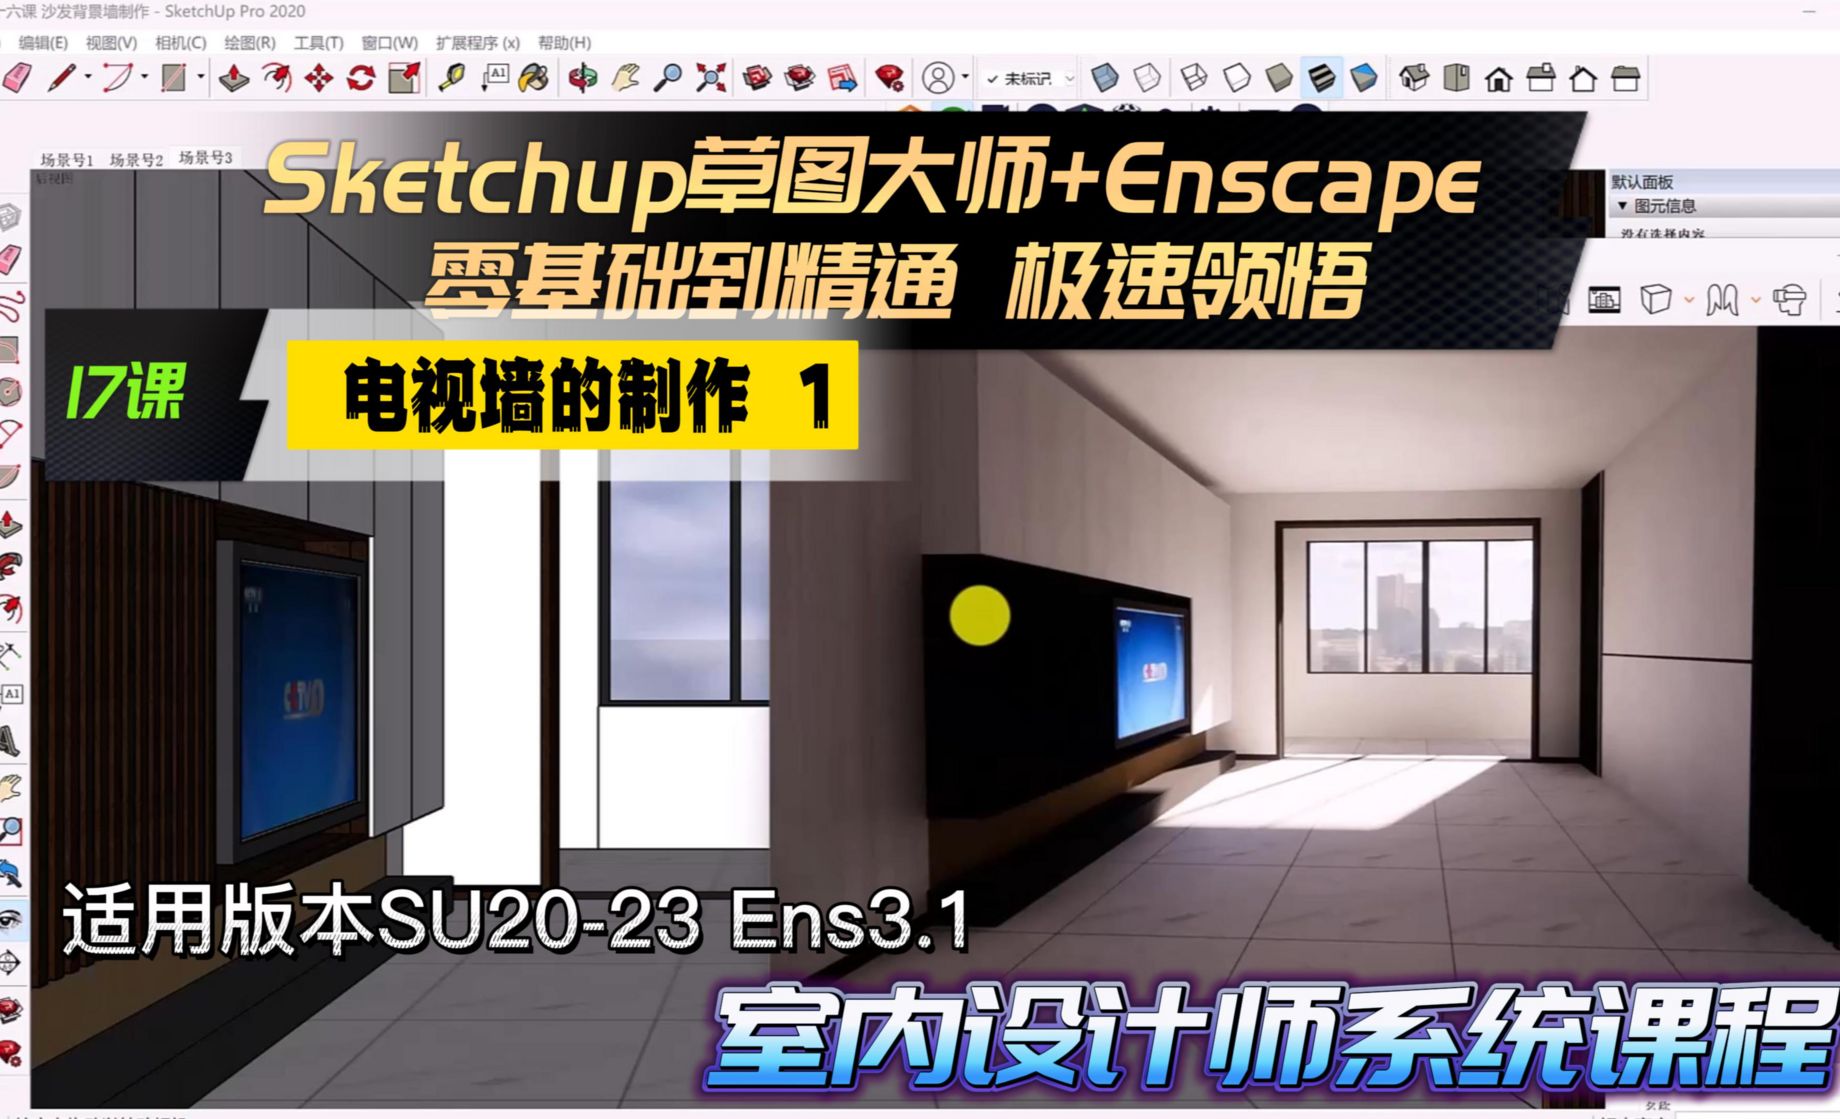 Sketchup+Enscape室内设计极速领悟-电视墙的制作1